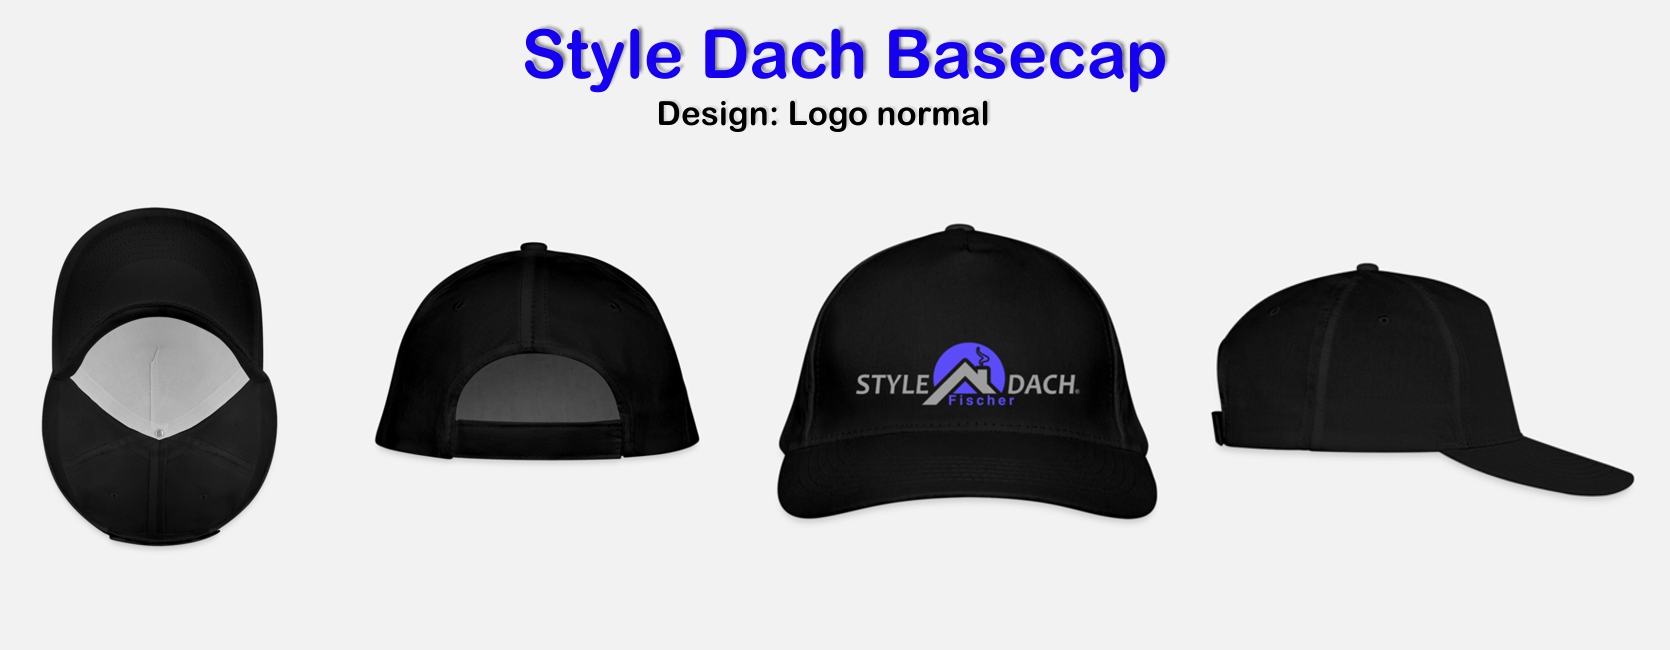 Basecap in schwarz mit Style Dach Logo